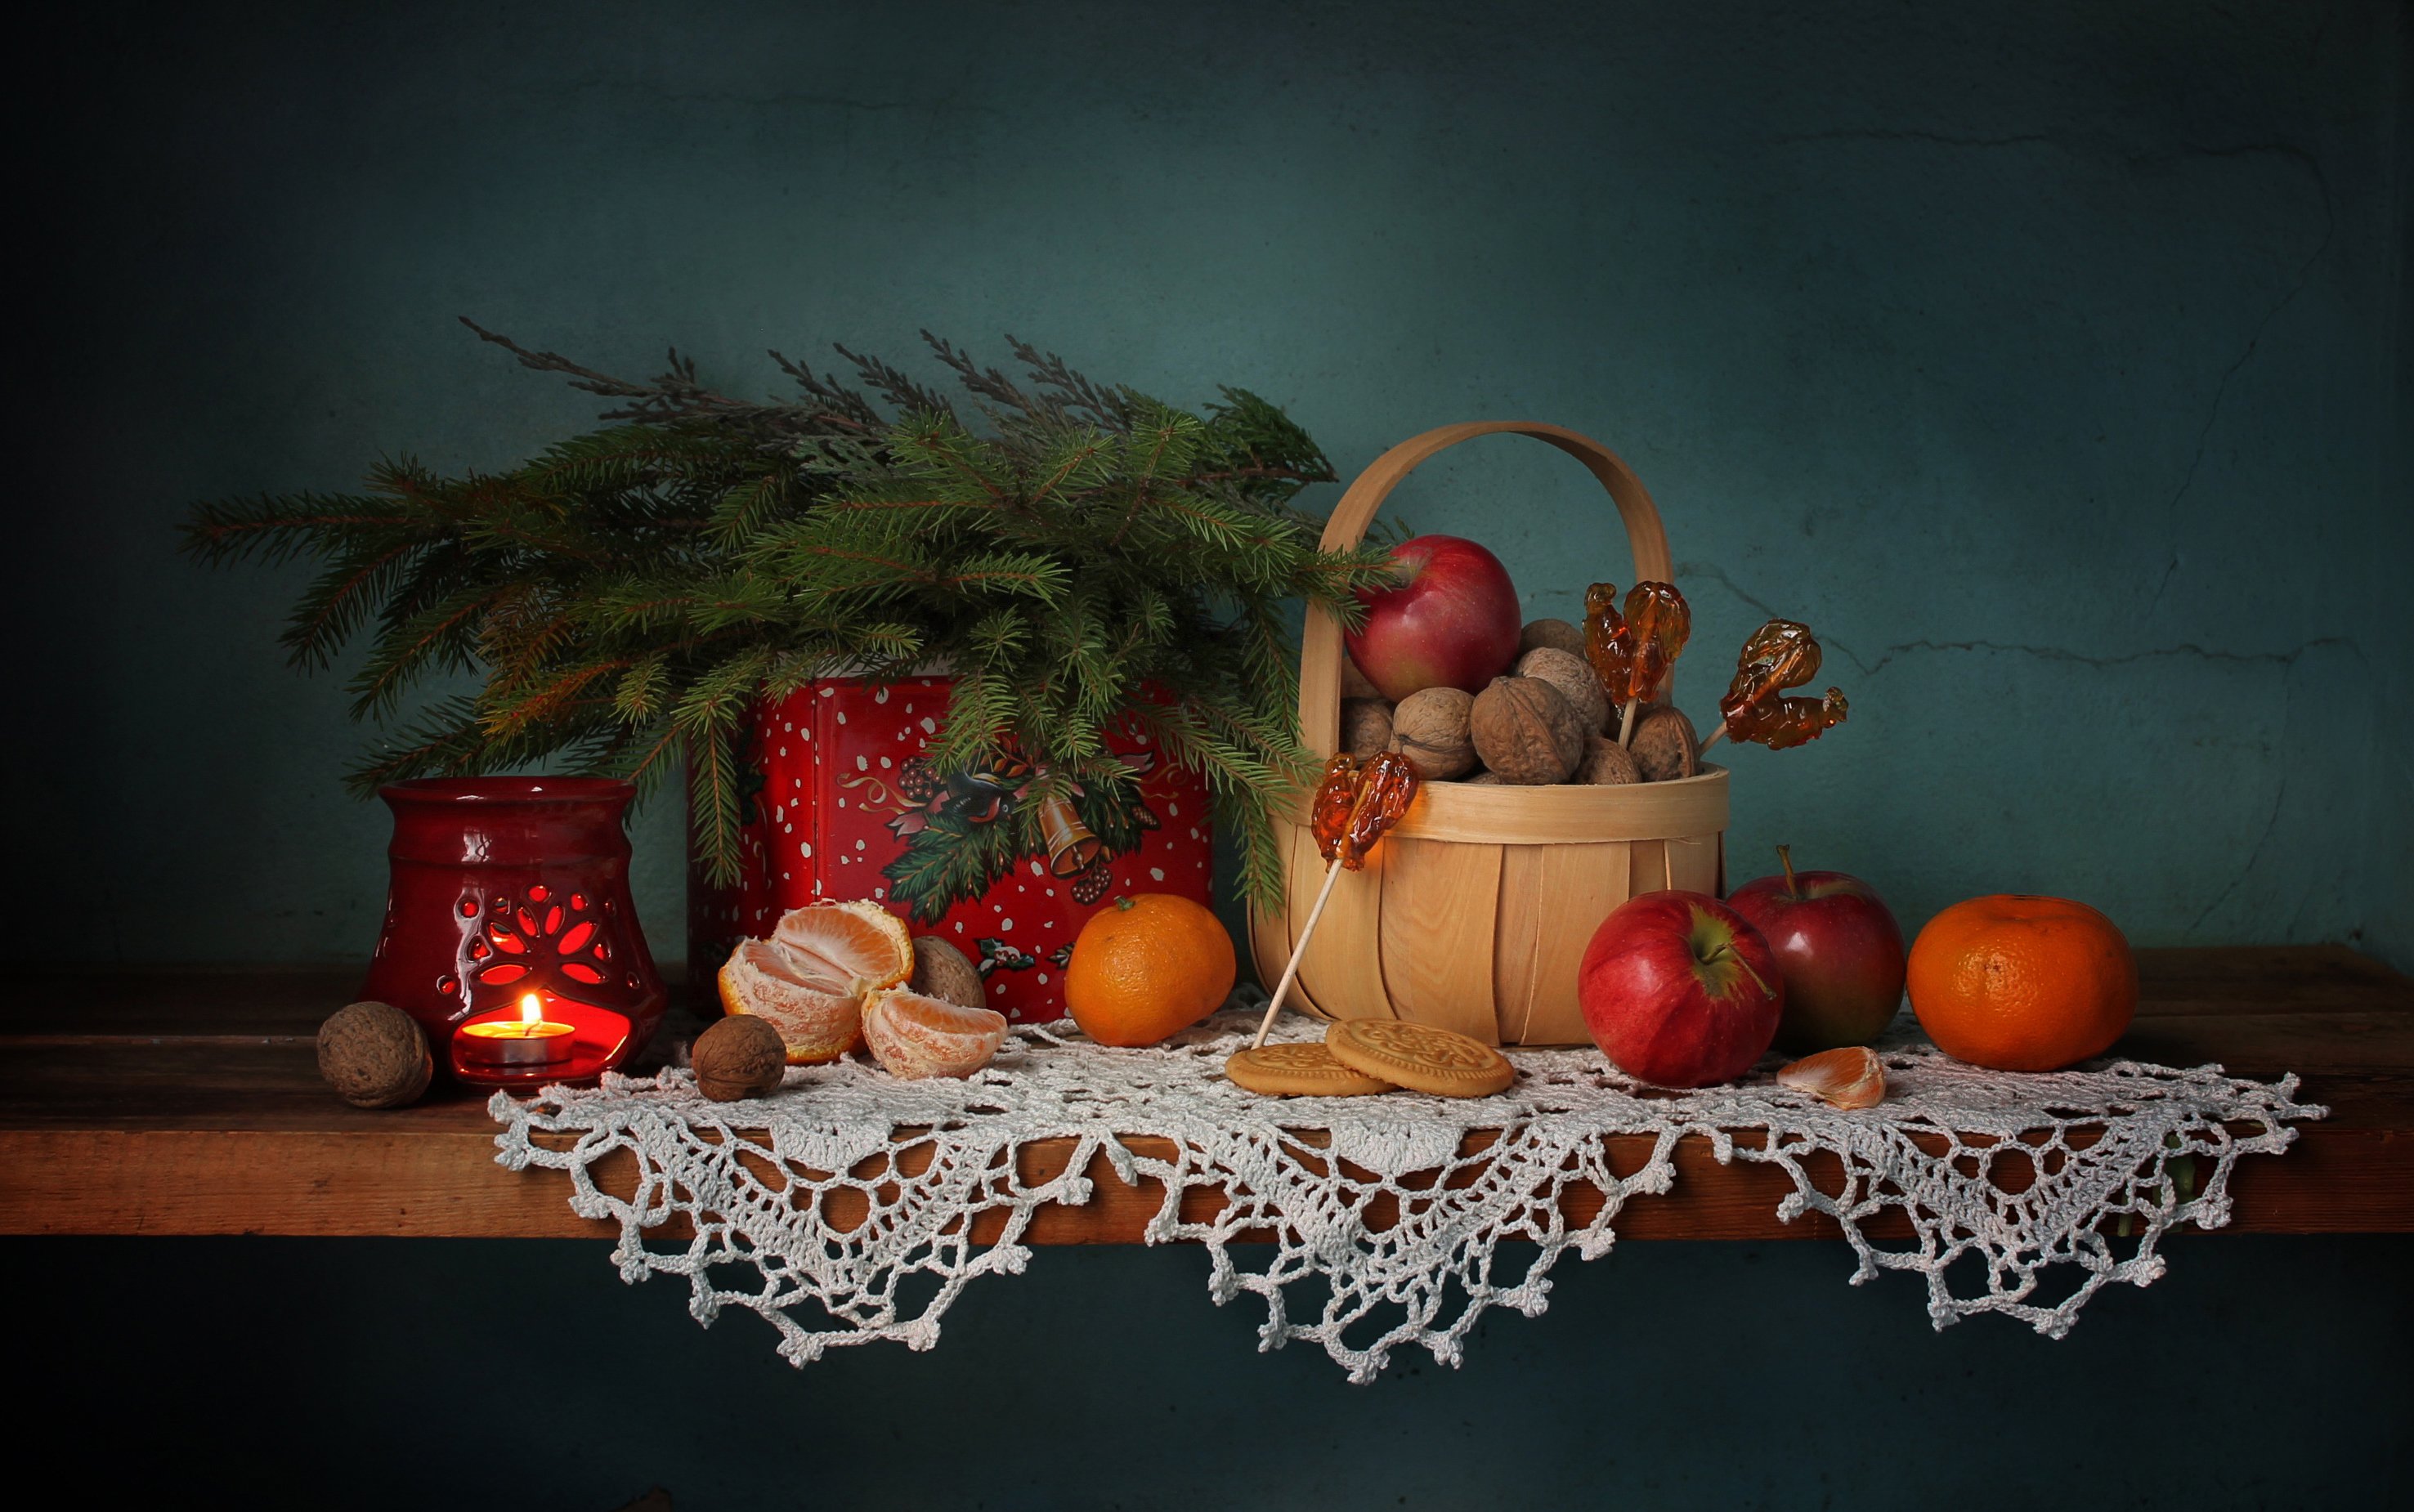 натюрморт,  новый год, елка, леденцы, мандарины, яблоки, сладости, подсвечник, Ковалева Светлана